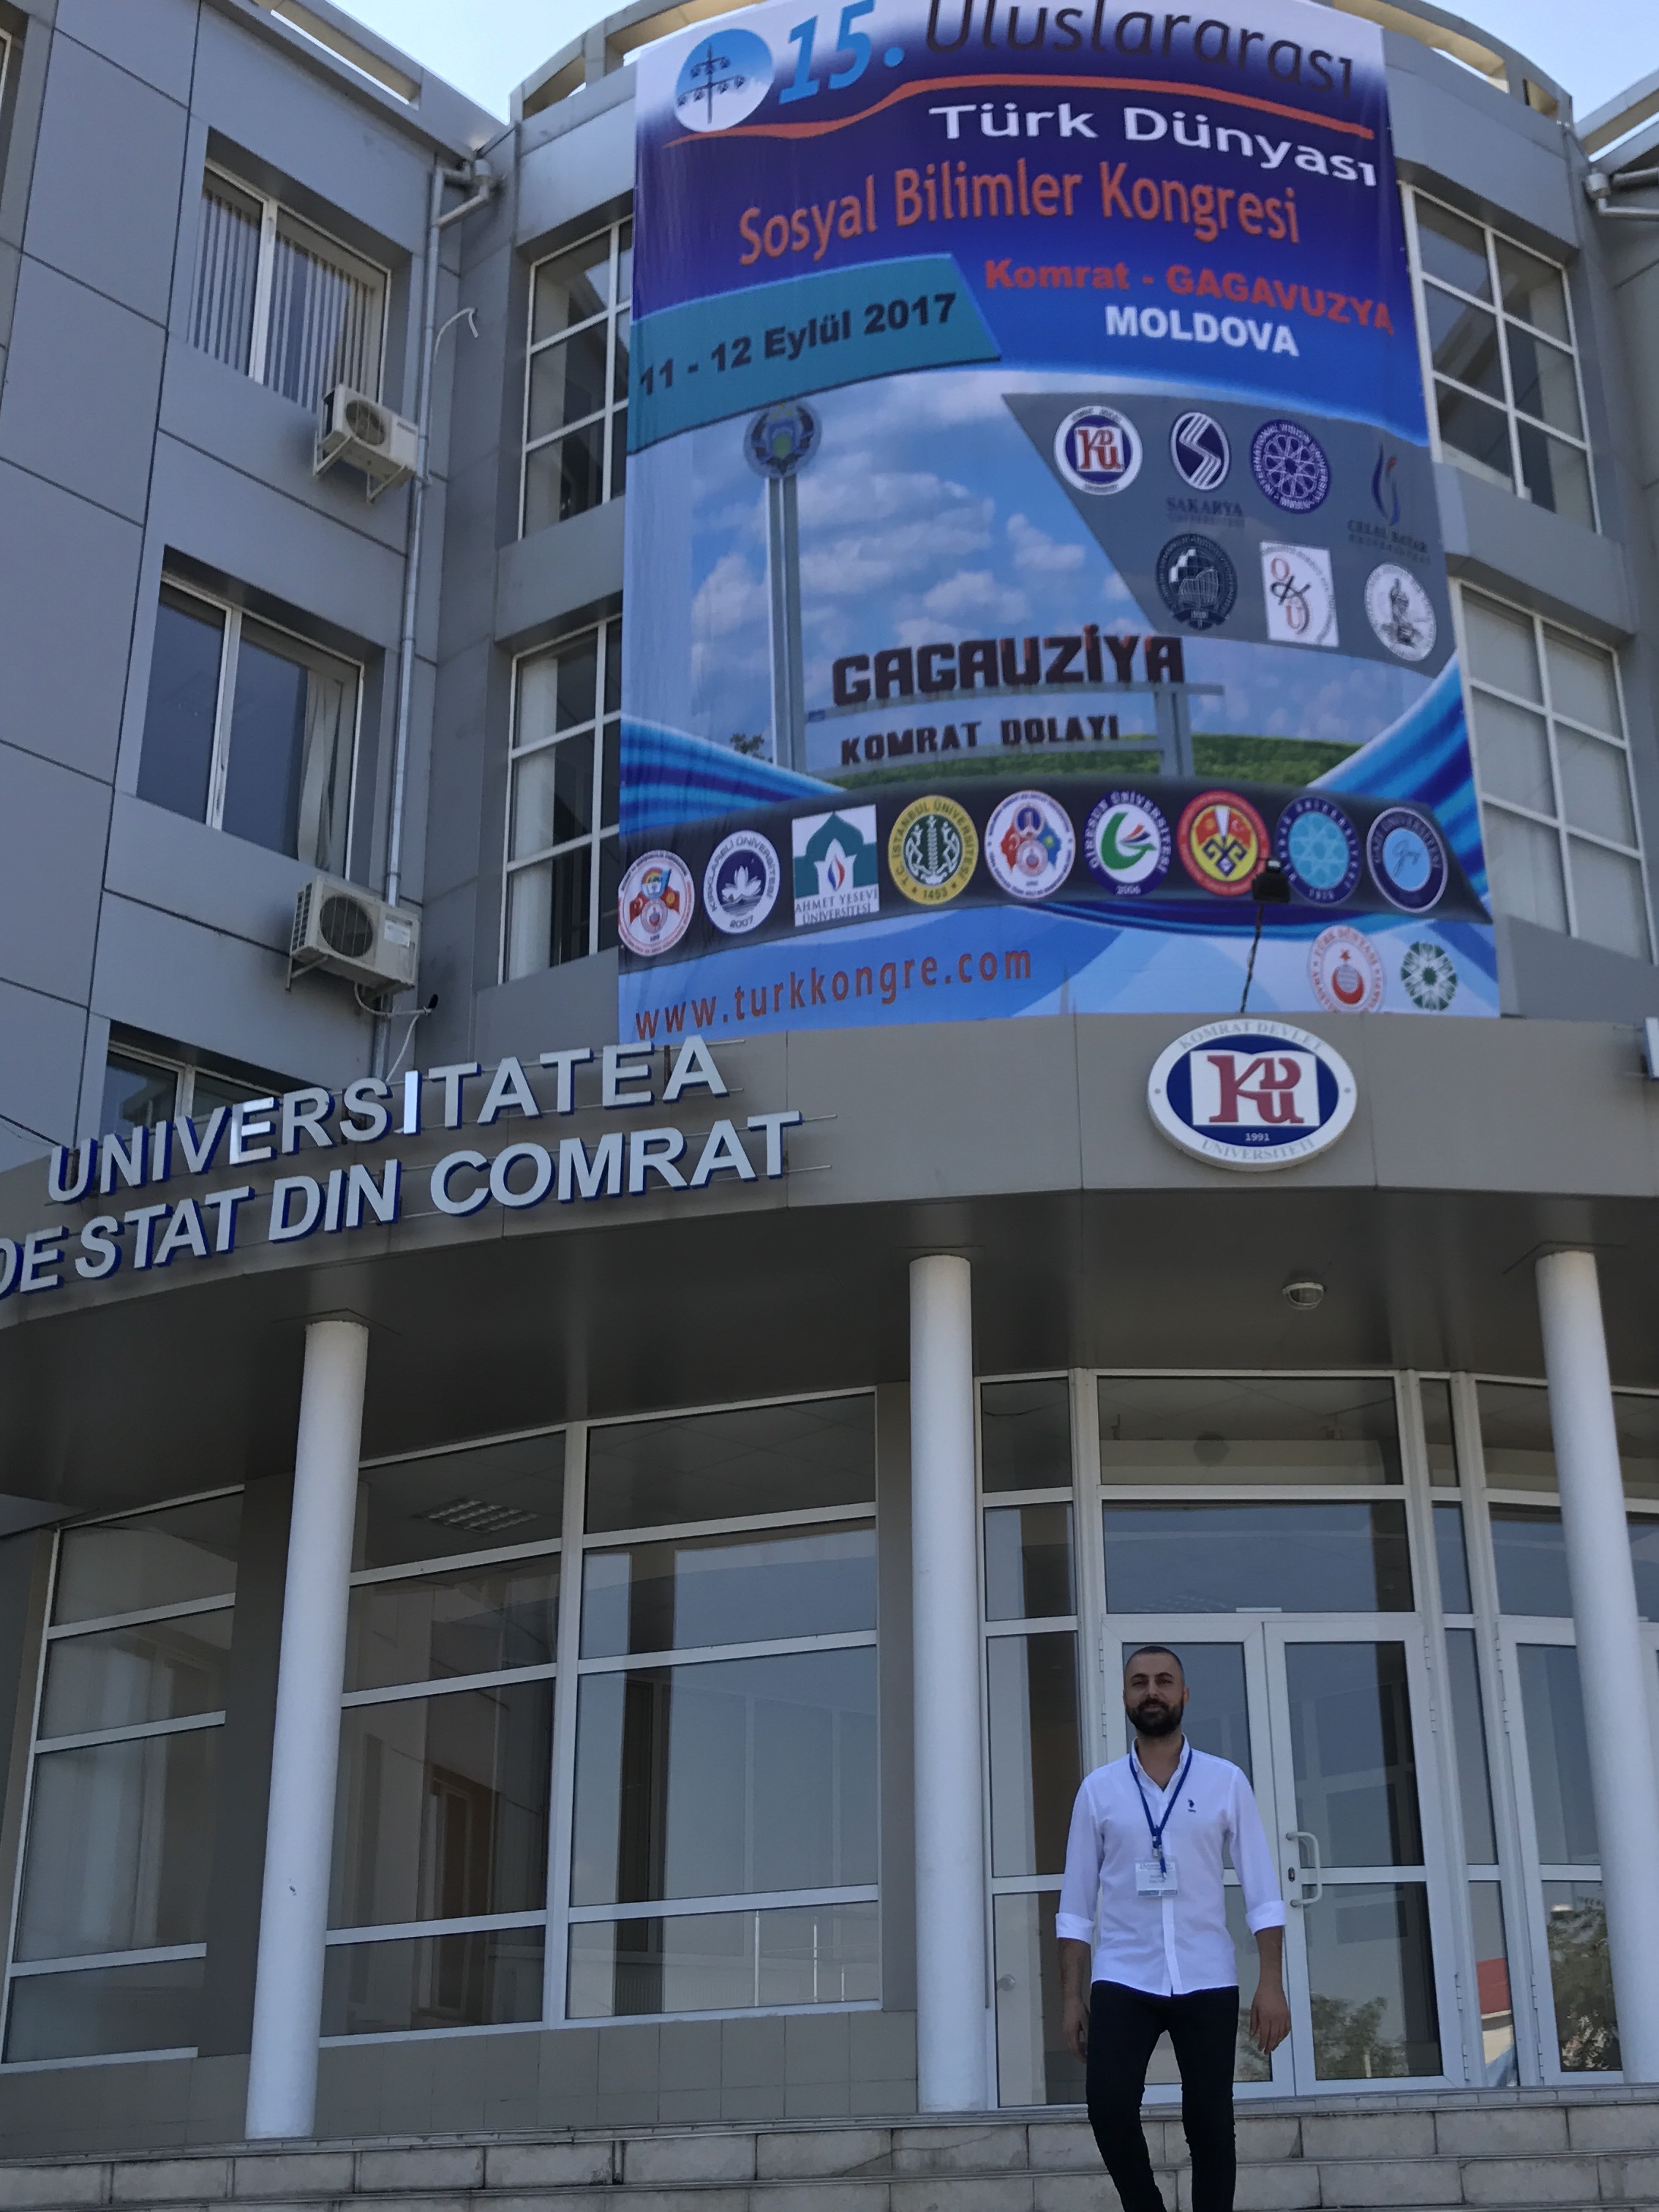 Hukuk Fakültesi Araştırma Görevlisi Onur CİDDİ, Moldova’da Komrat Devlet Üniversitesi’nde Düzenlenen 15. Uluslararası Sosyal Bilimler Kongresinde, Yakın Doğu Üniversitesini Temsil Etti